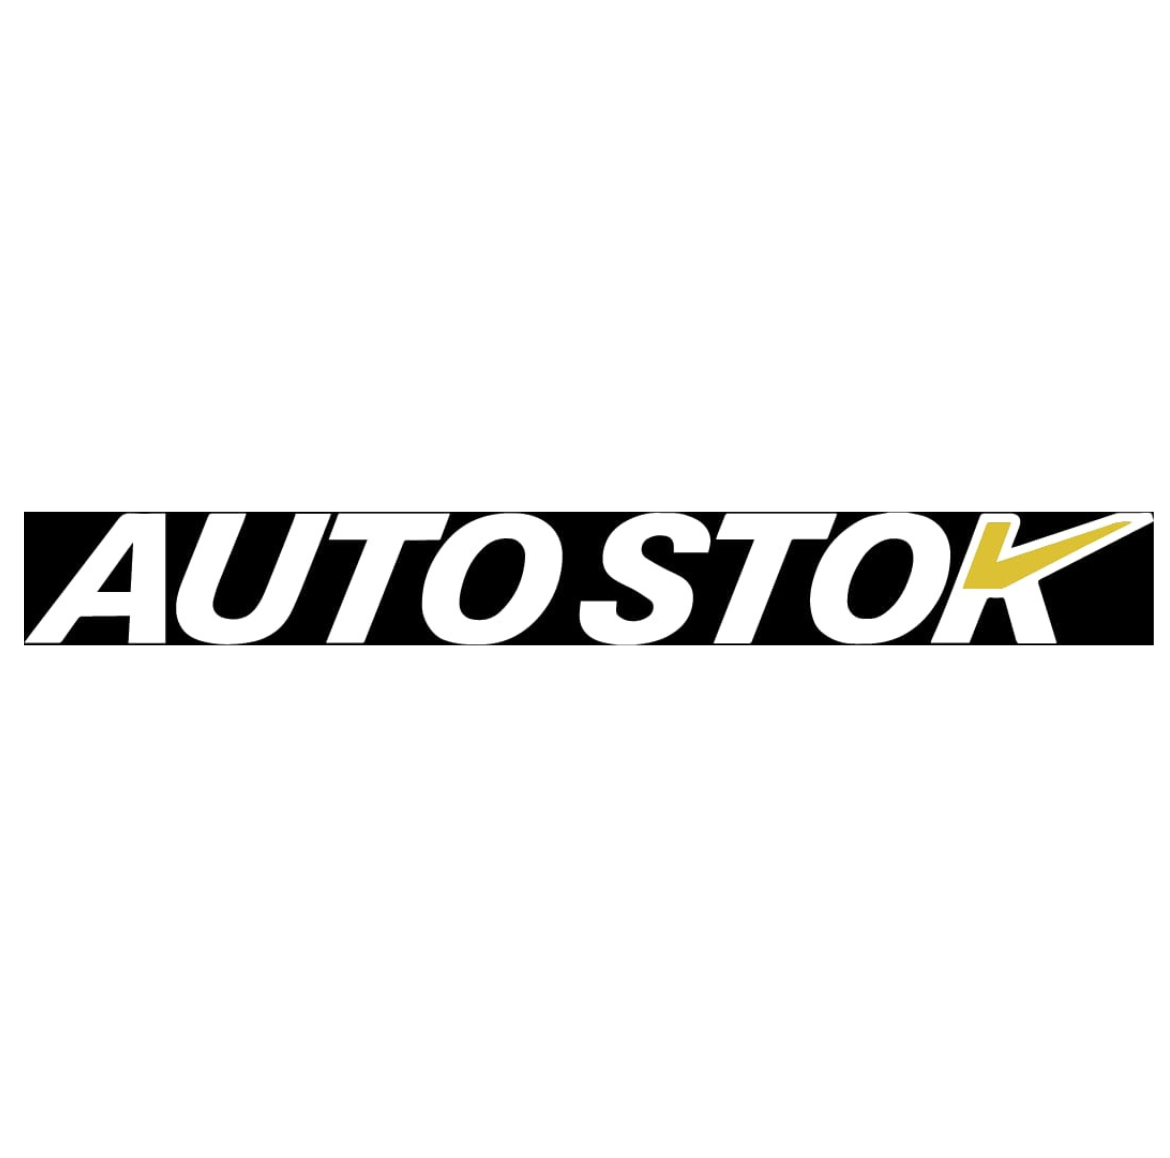 Concesionario Autostok